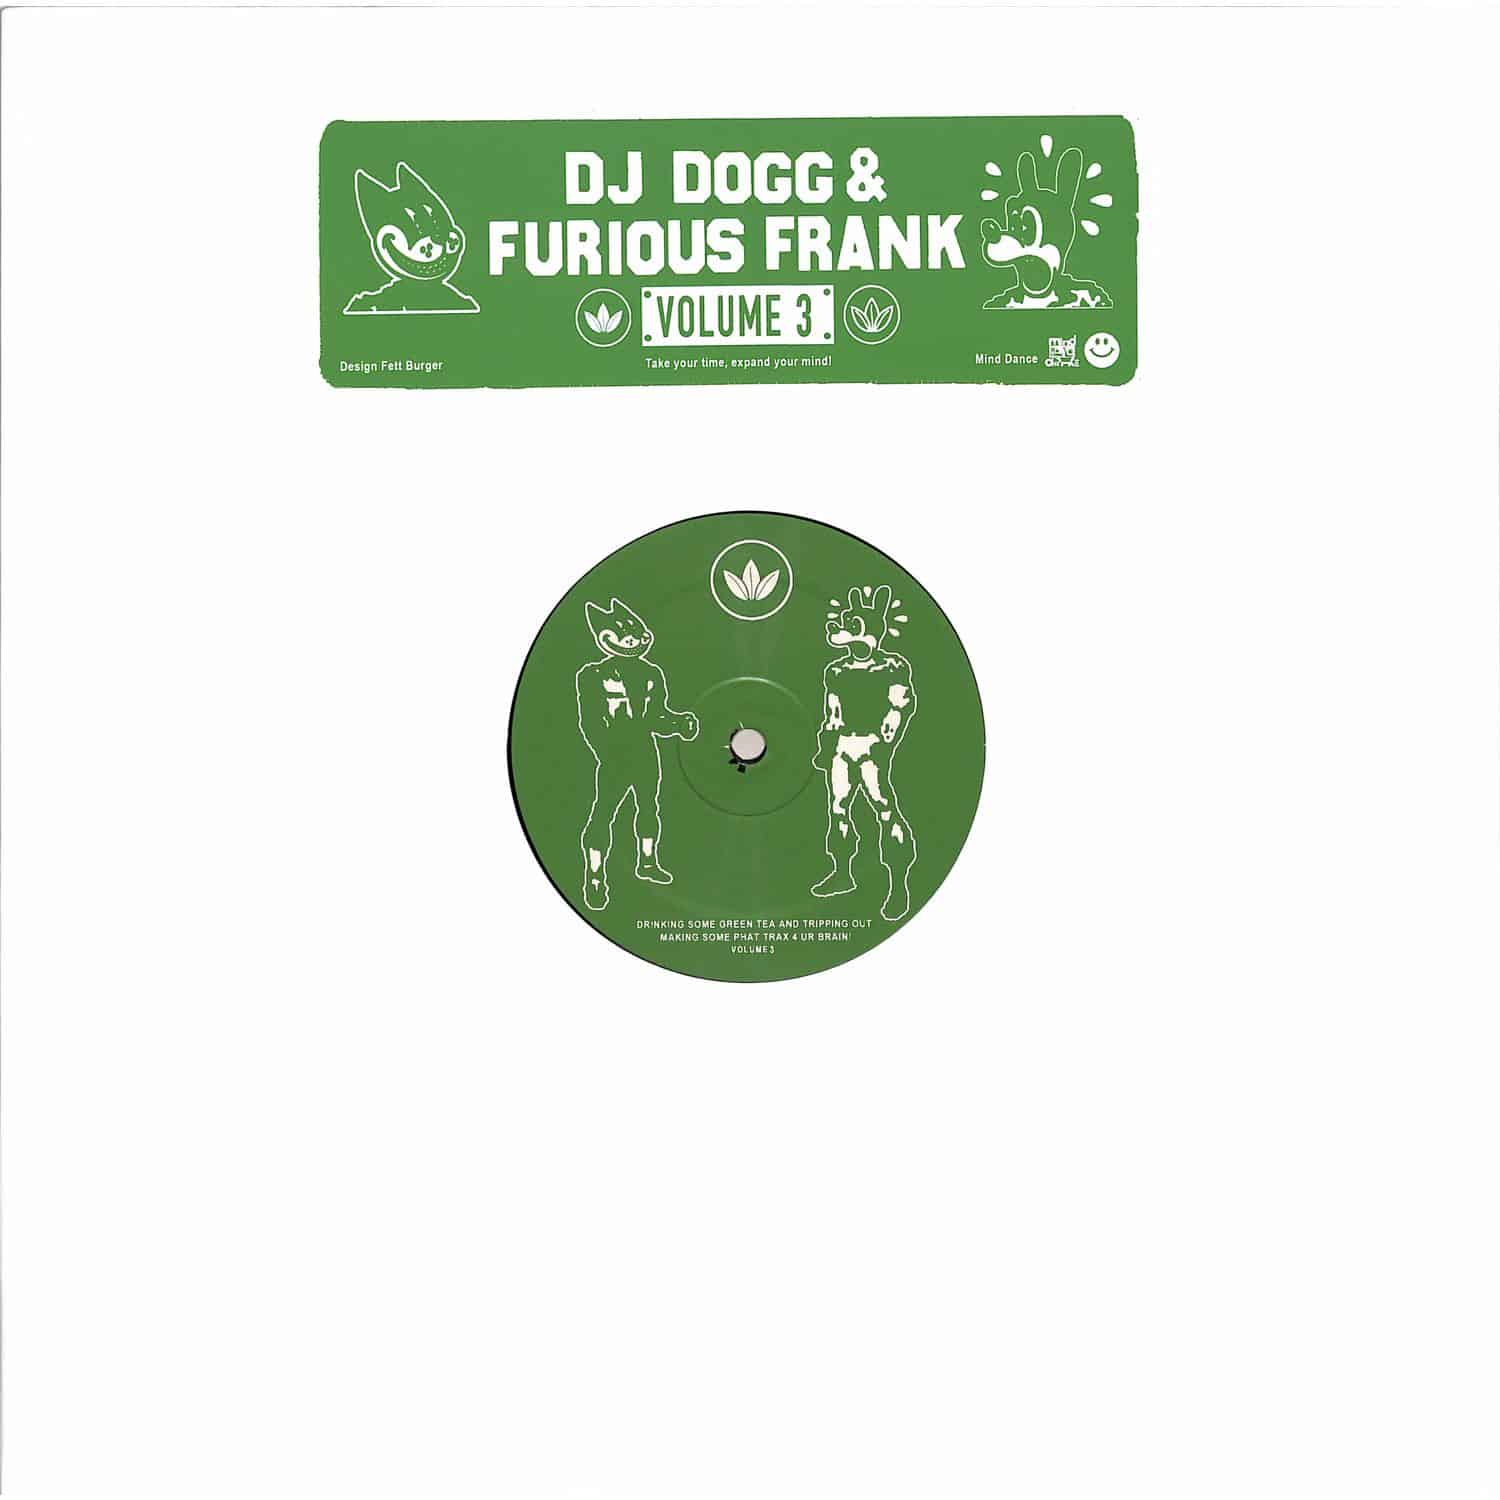 DJ Dogg & Furious Frank - VOLUME 3